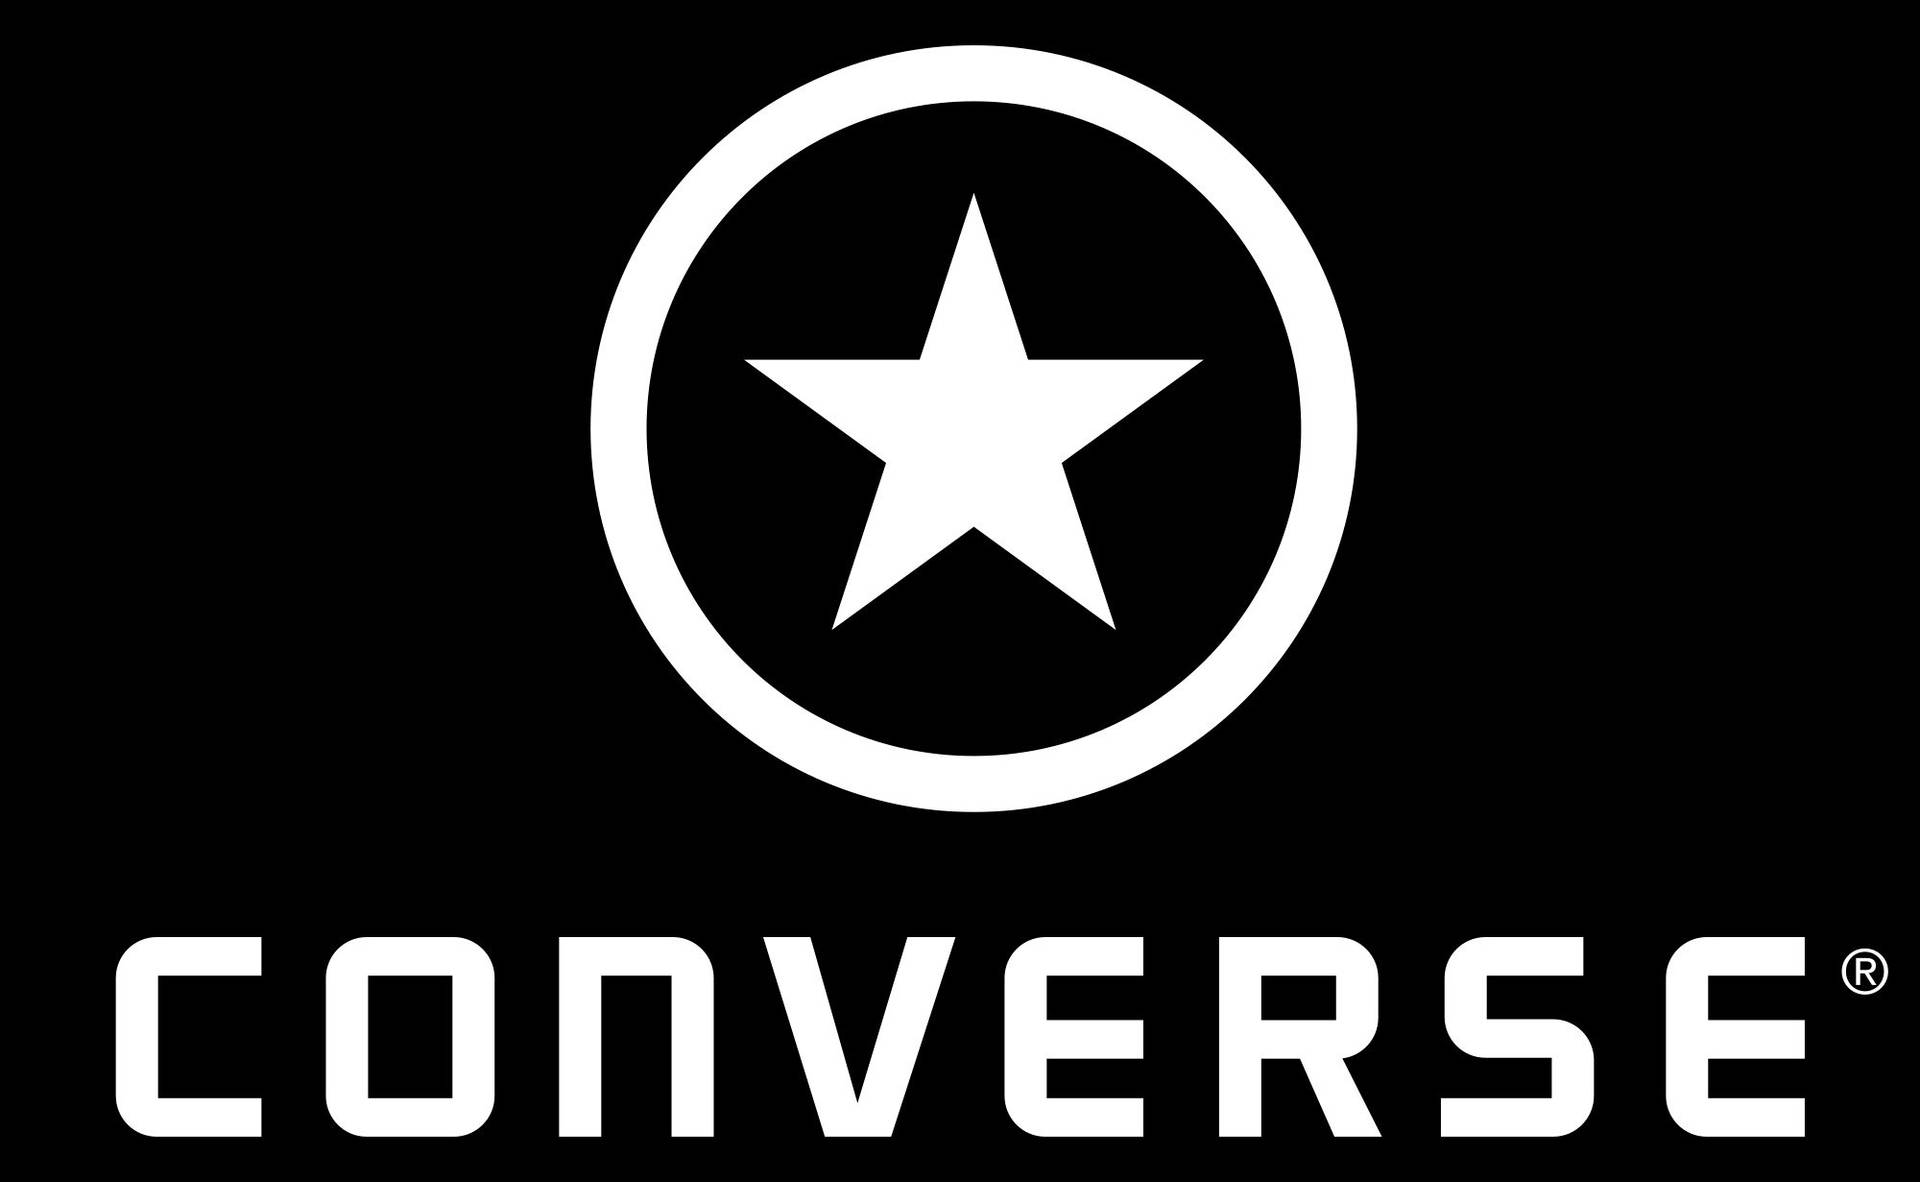 2003 White Converse Logo Wallpaper